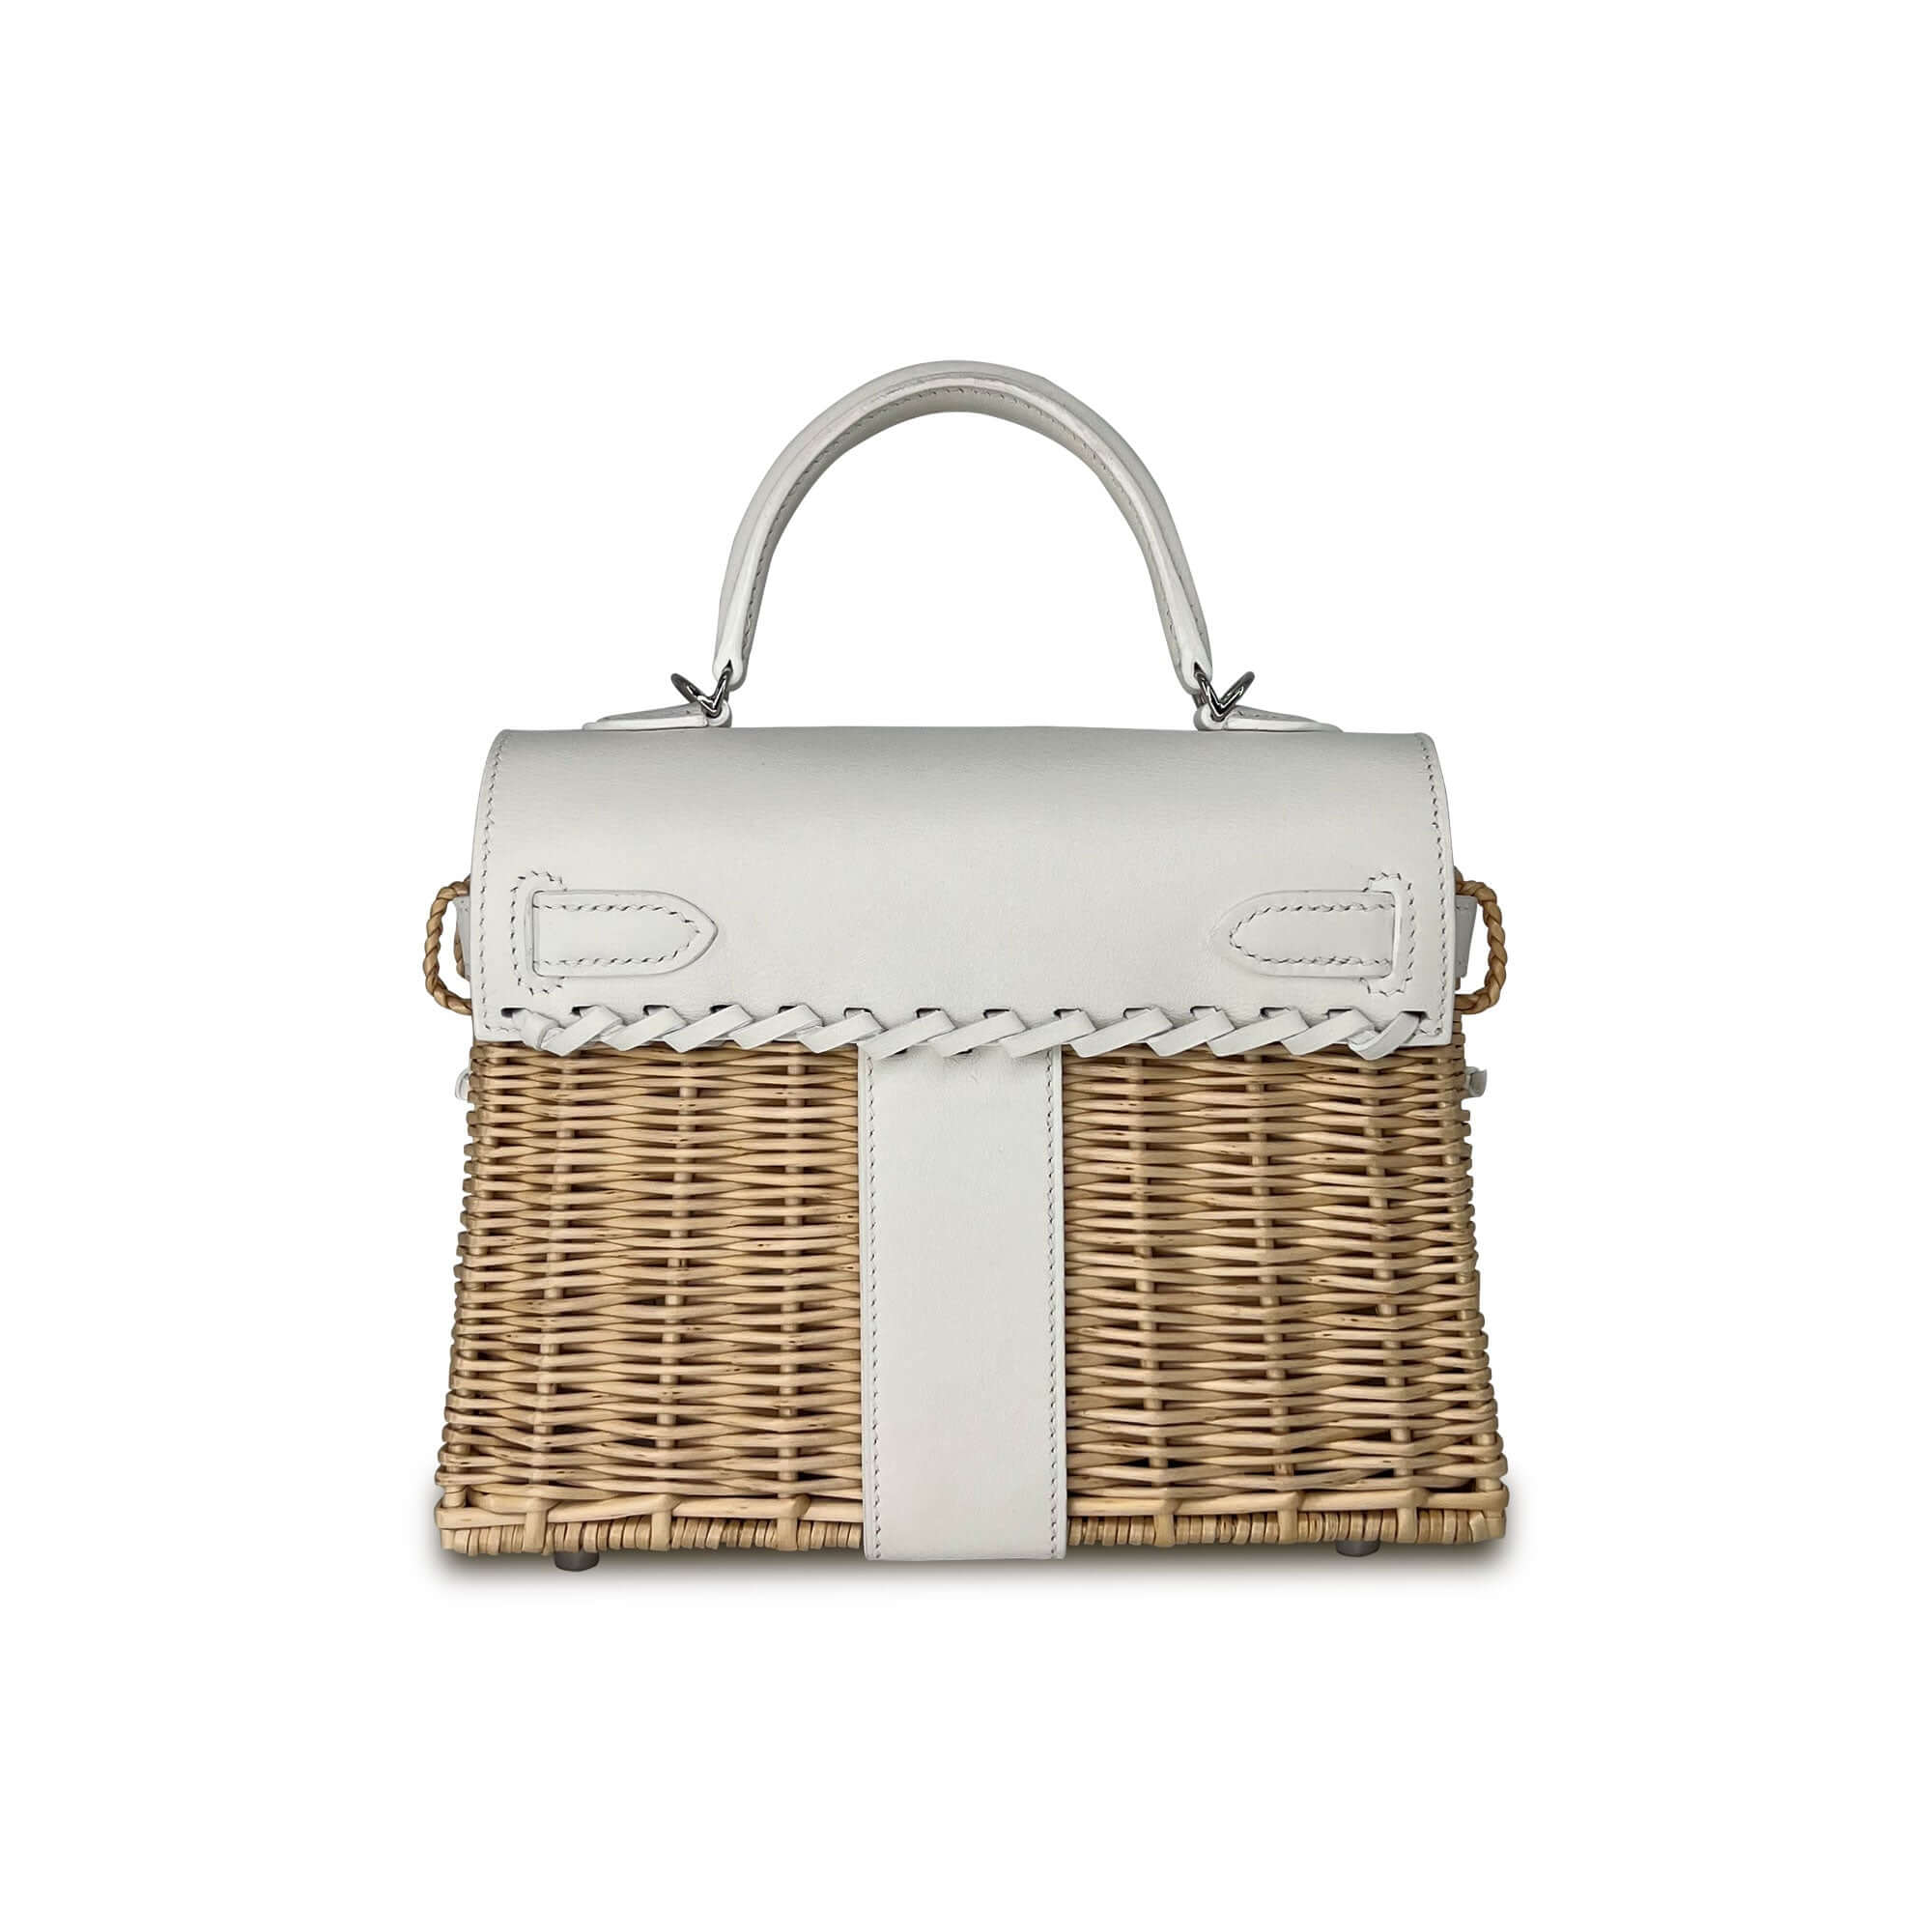 Top Quality Hermes Kelly Designer Bag in white K20